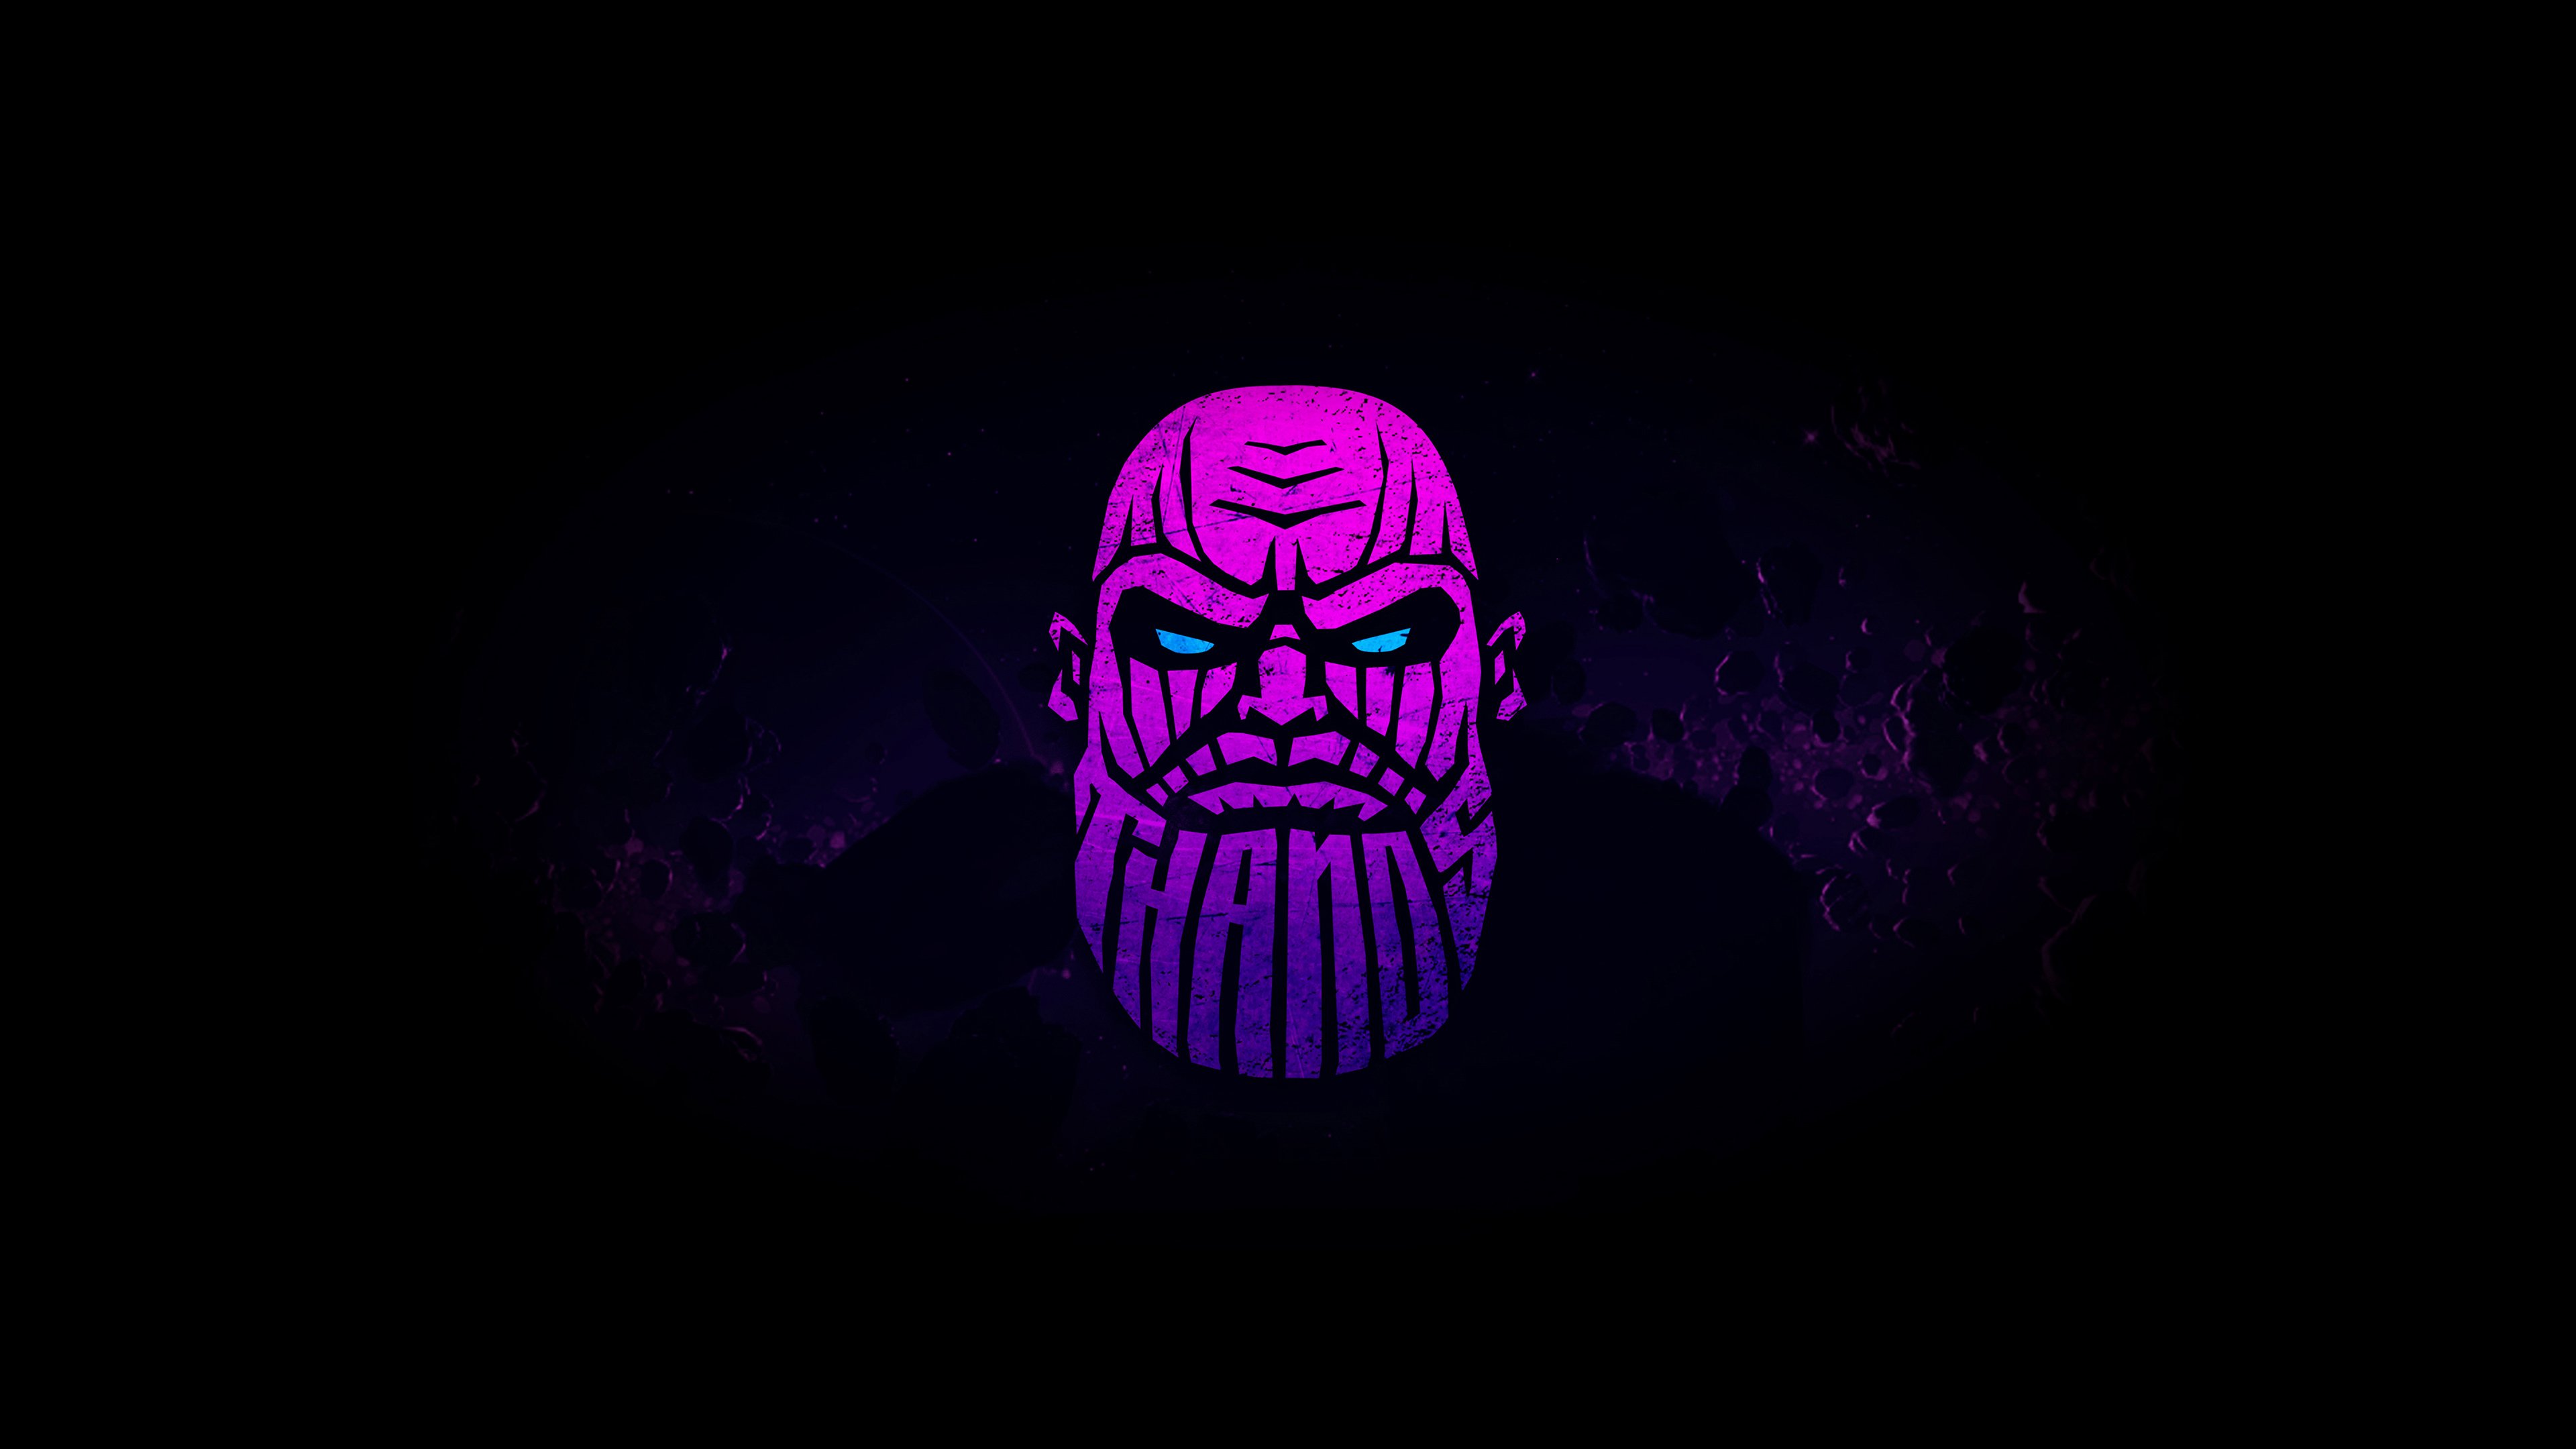 Hình nền Thanos 4K sẽ làm bạn phải trầm trồ với độ sắc nét và chi tiết tuyệt vời! Bạn sẽ hiểu vì sao đế chế Marvel lại dành tình cảm đặc biệt đến với nhân vật tàn bạo này. Hãy xem ngay để cảm nhận sức mạnh vô địch của Thanos!